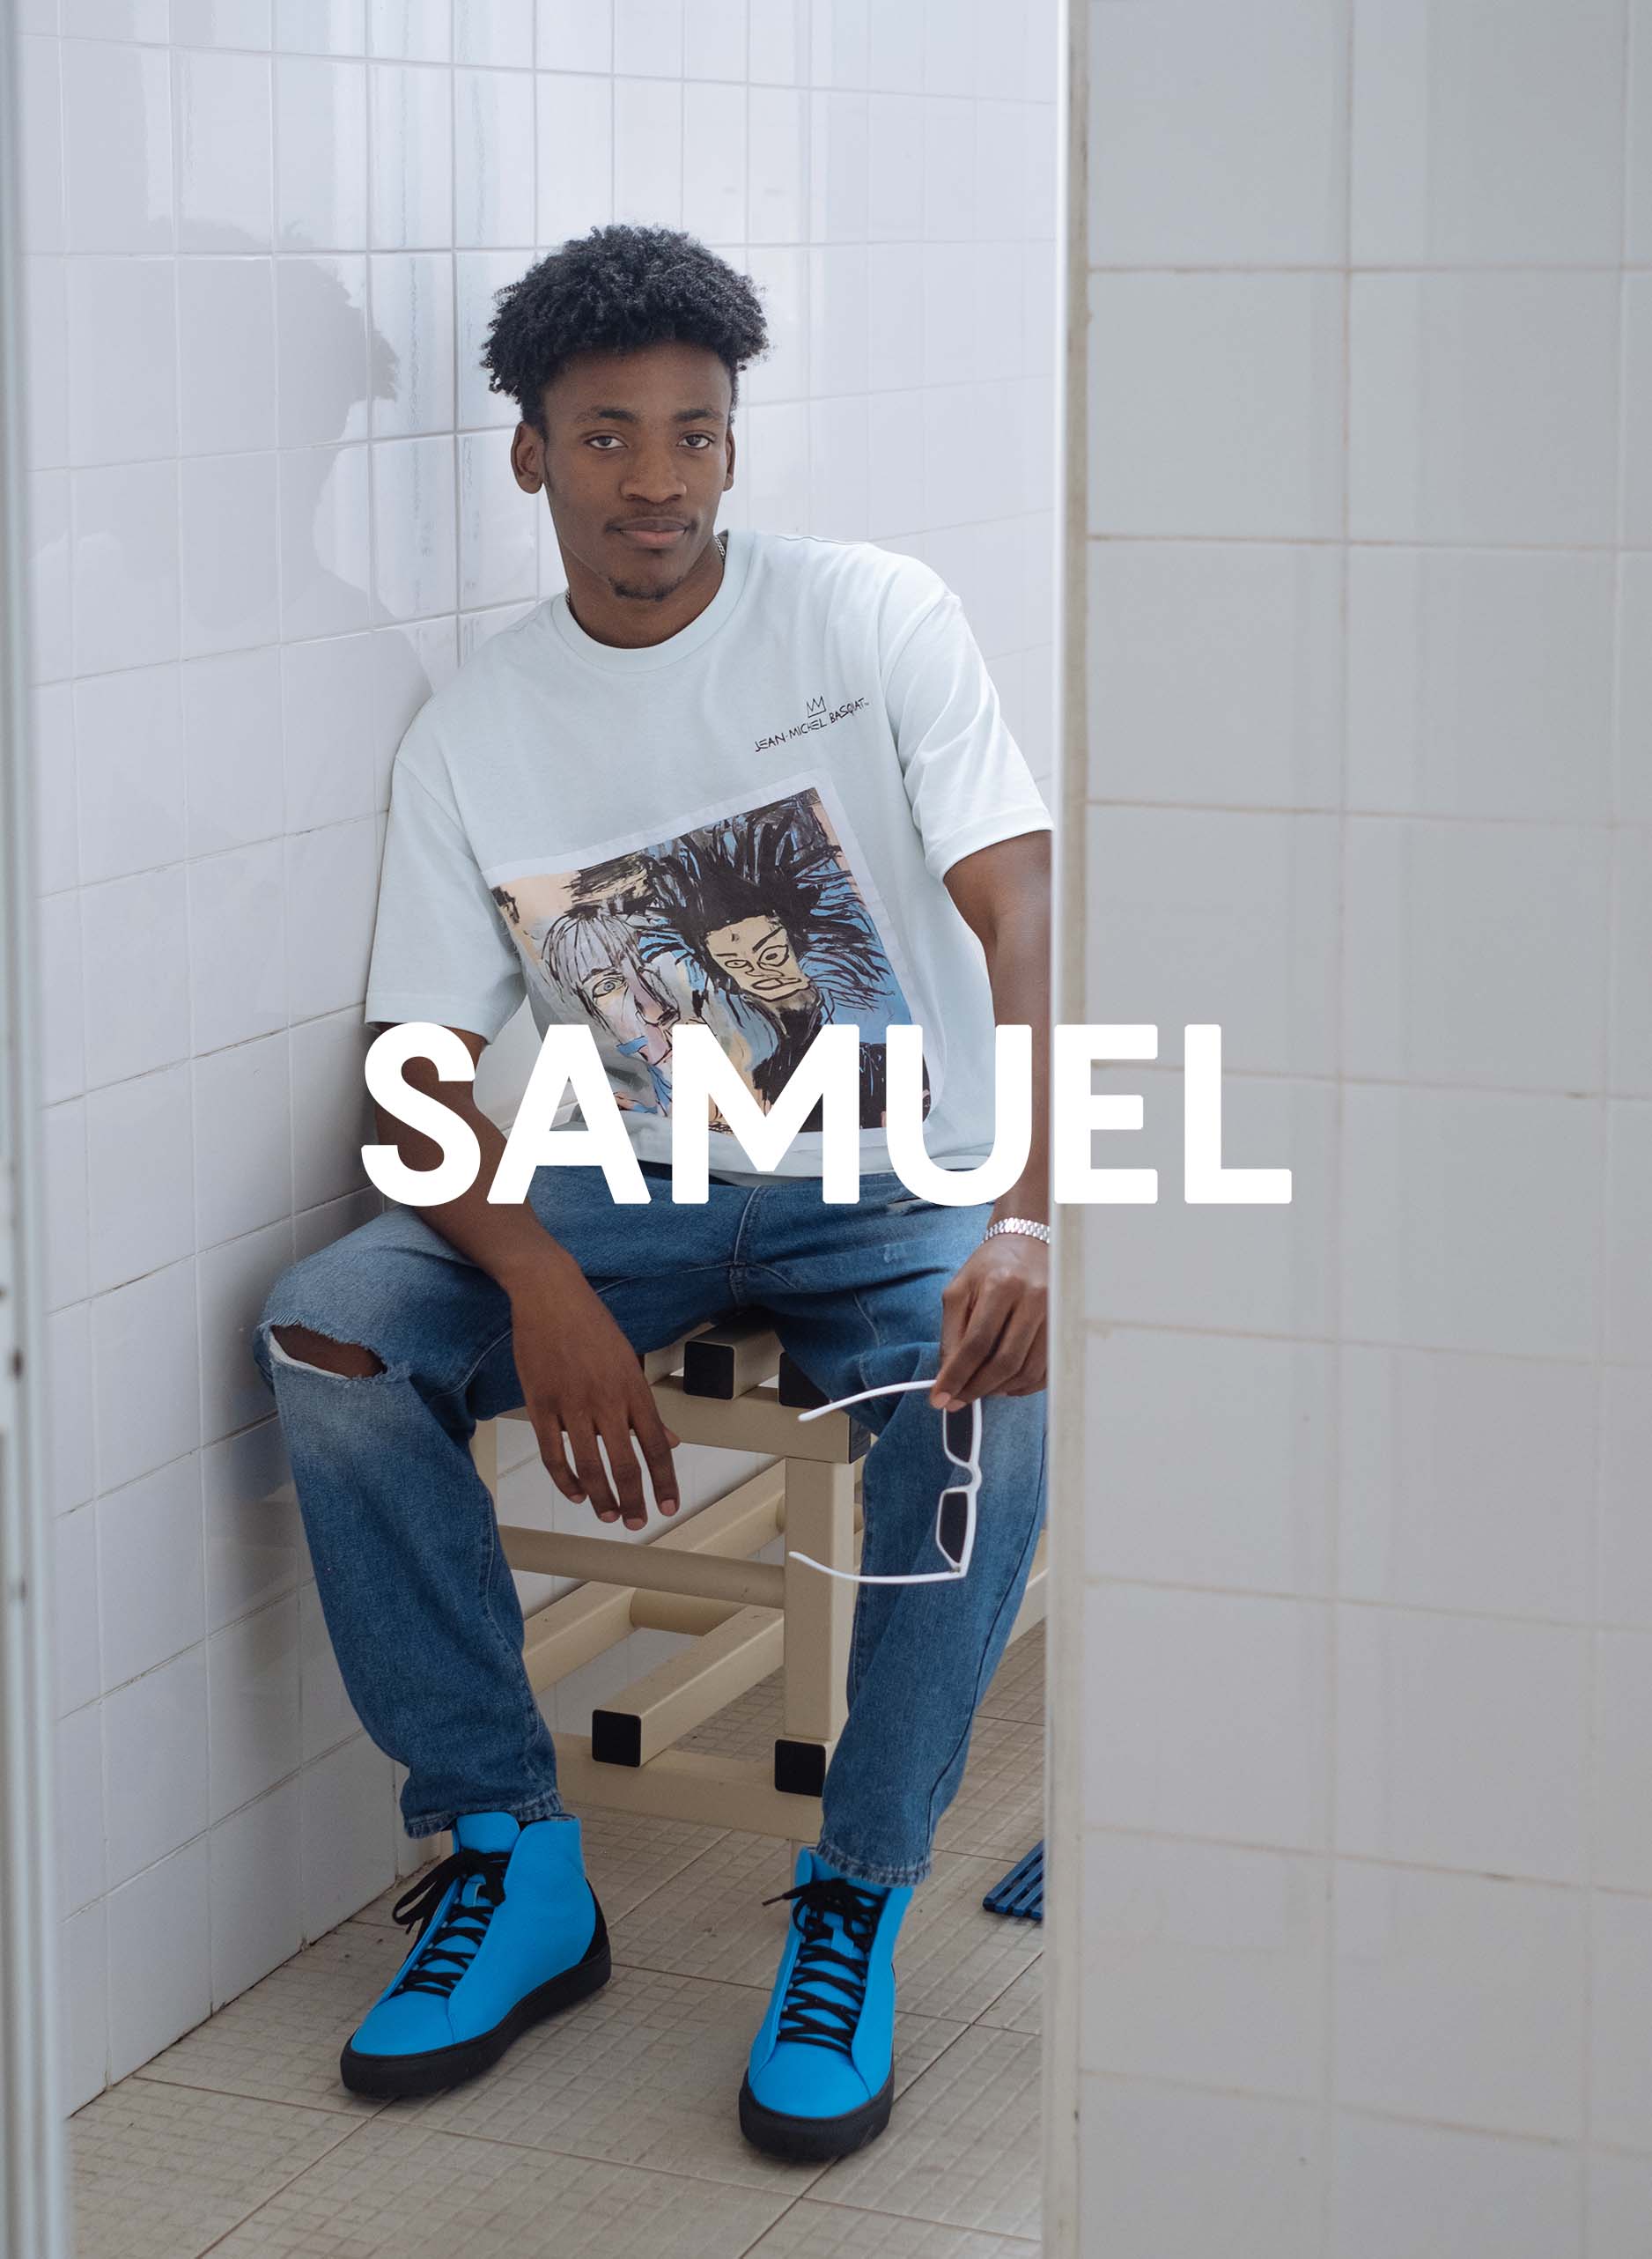 Samuel portant Diverge sneakers et la mise en valeur de l’impact social et des chaussures personnalisées à travers le projet Imagine.